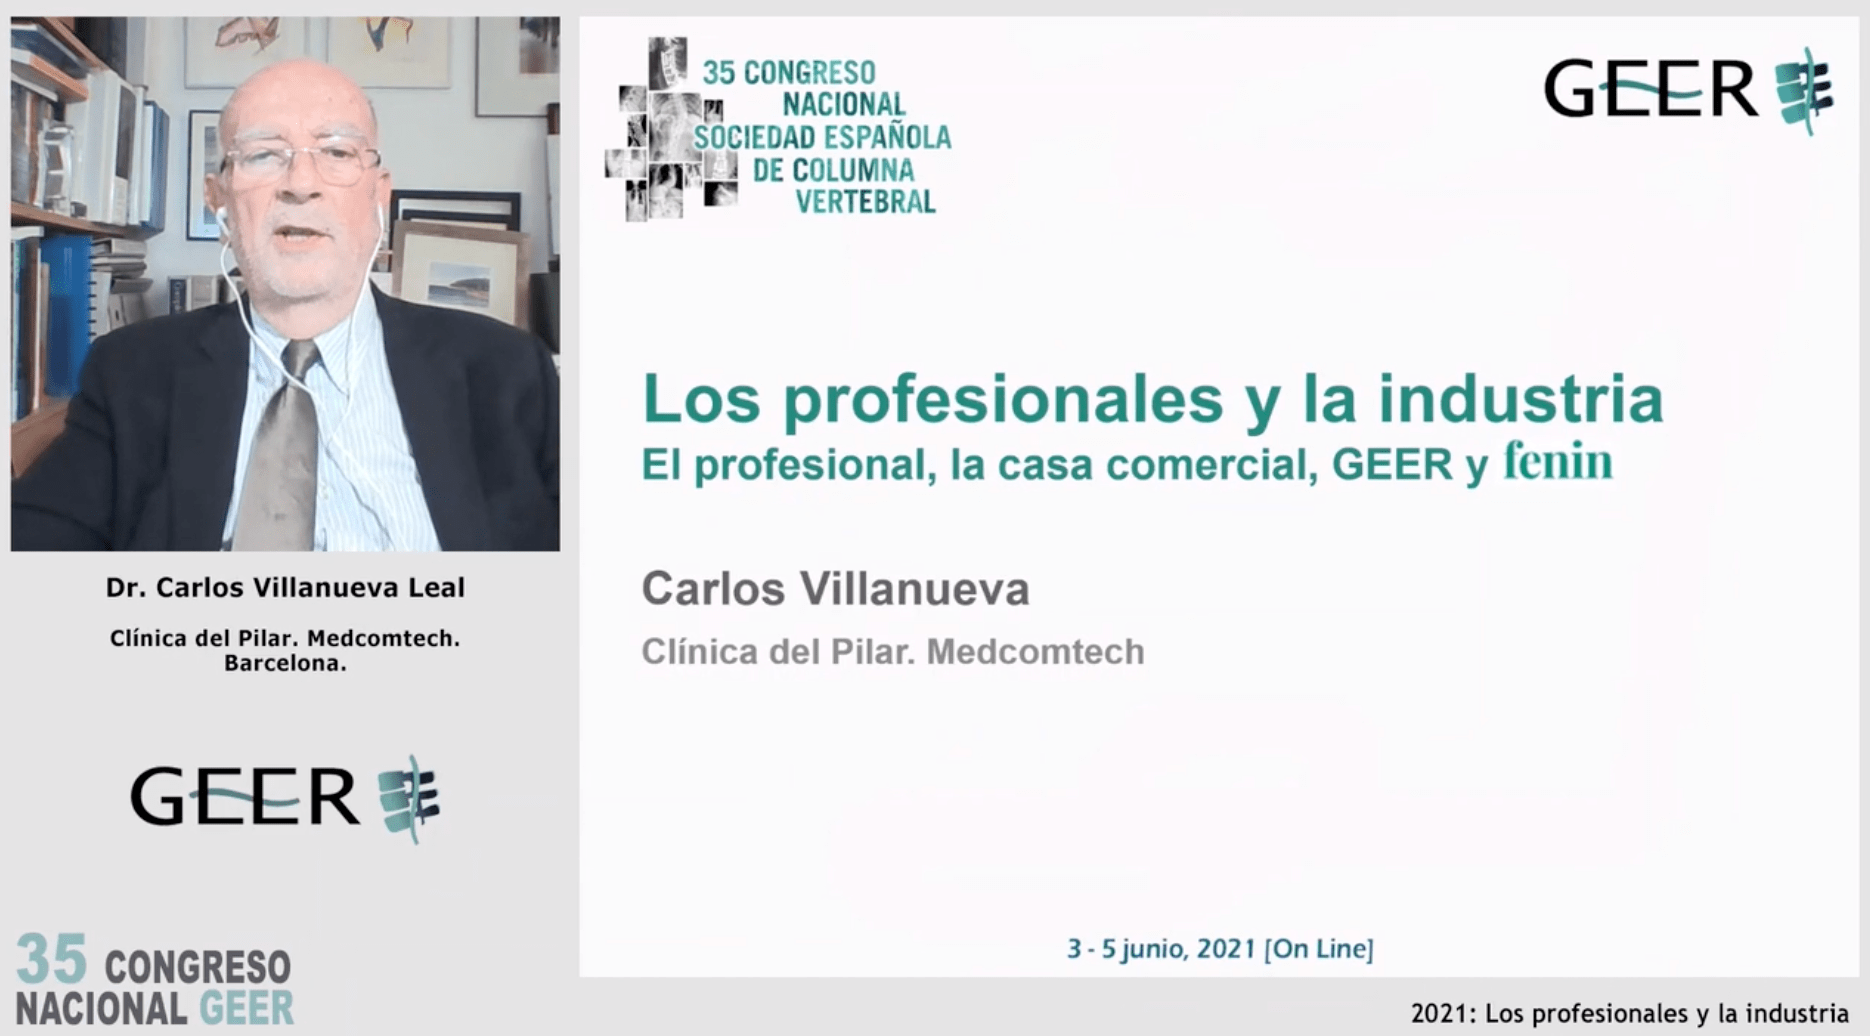 Conferencia Invitada GEER: 
2021: Los profesionales y la industria